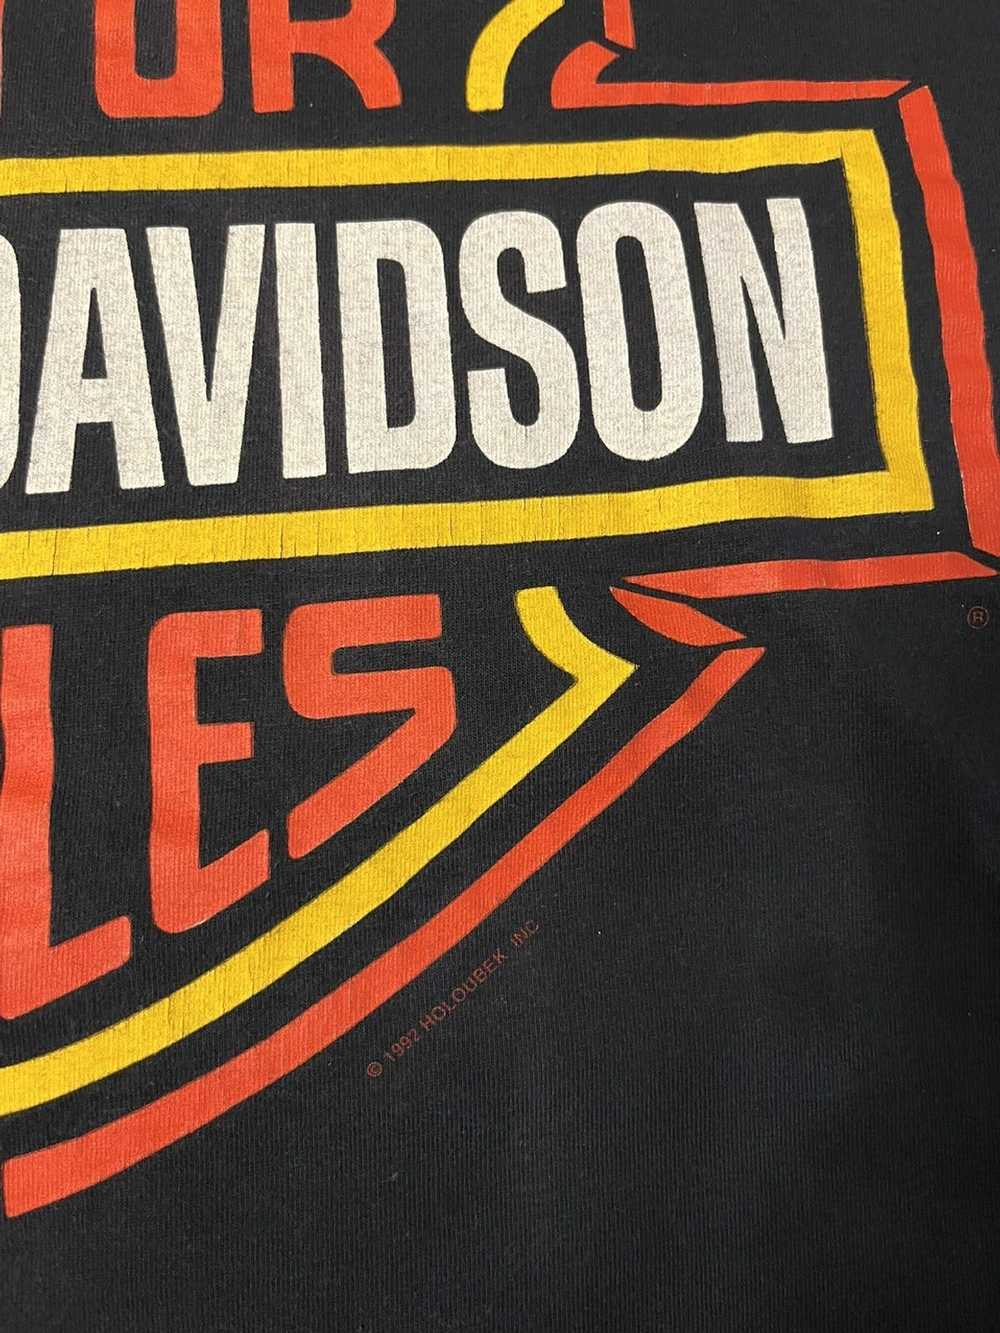 Harley Davidson × Vintage Vintage Harley Davidson… - image 3